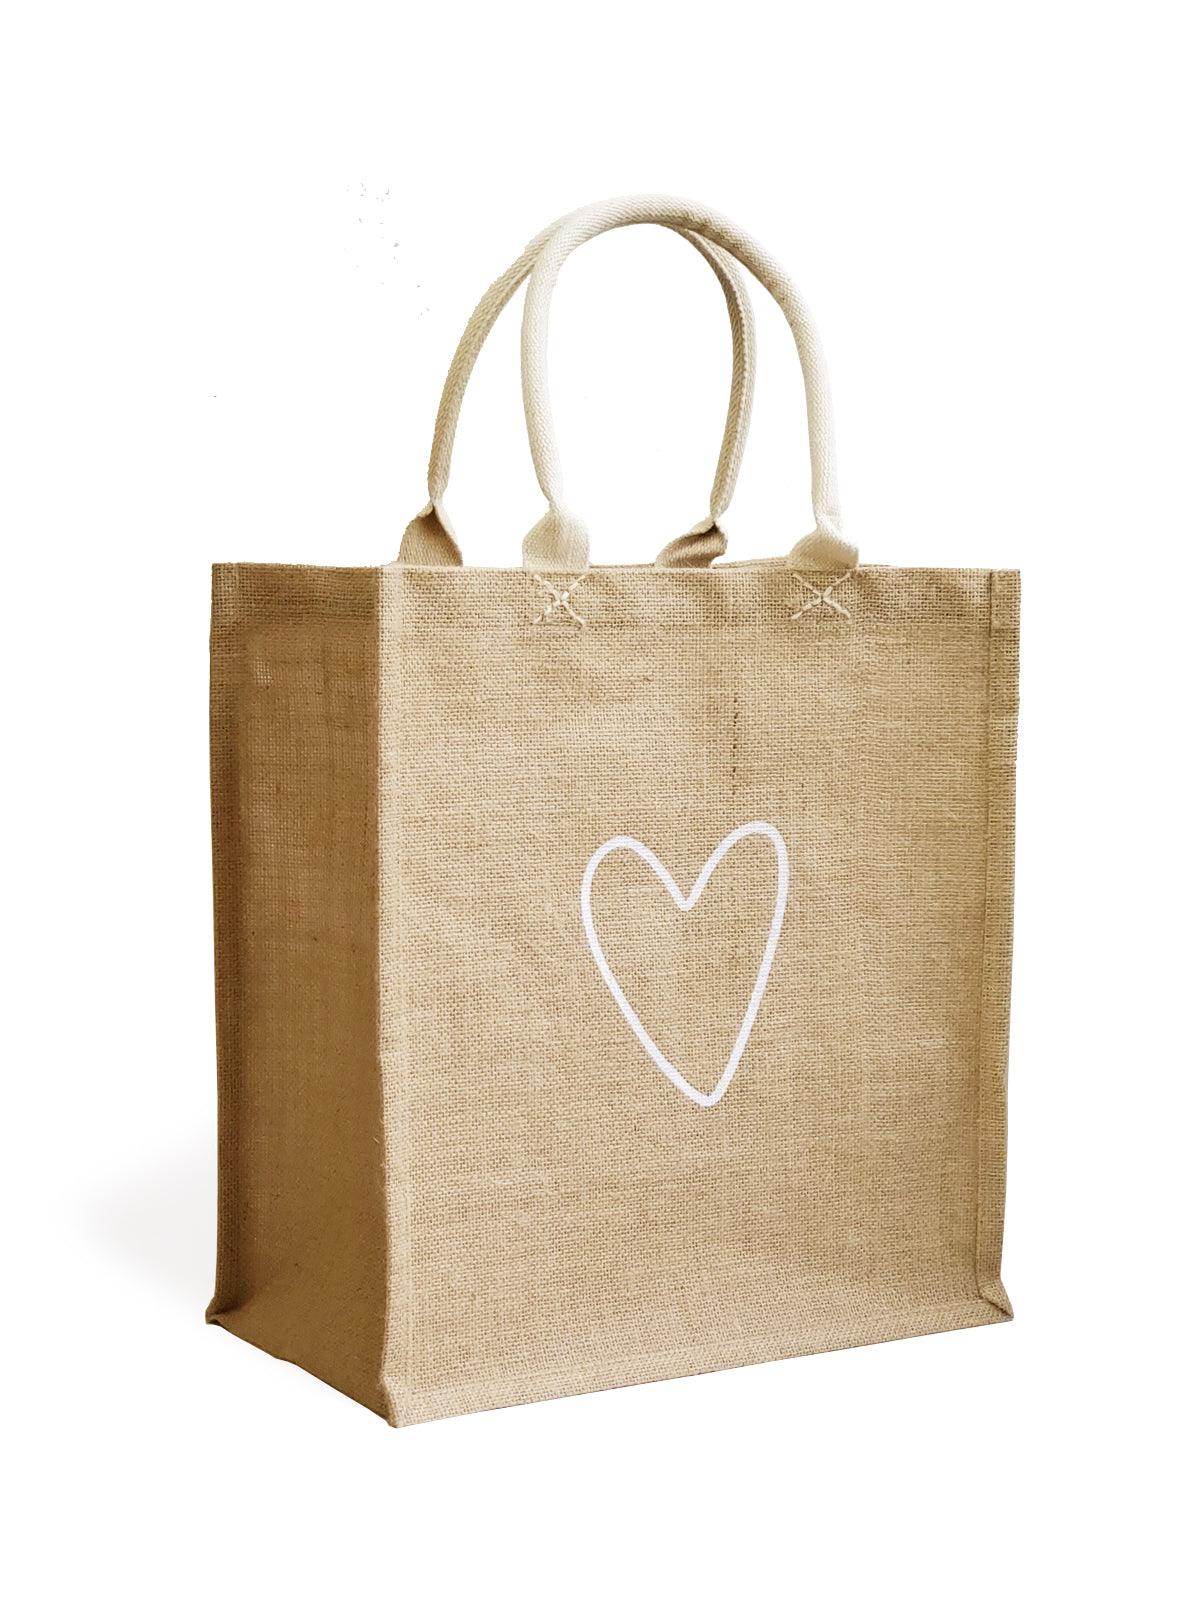 Love Market Bag - Plant Paradise Boutique